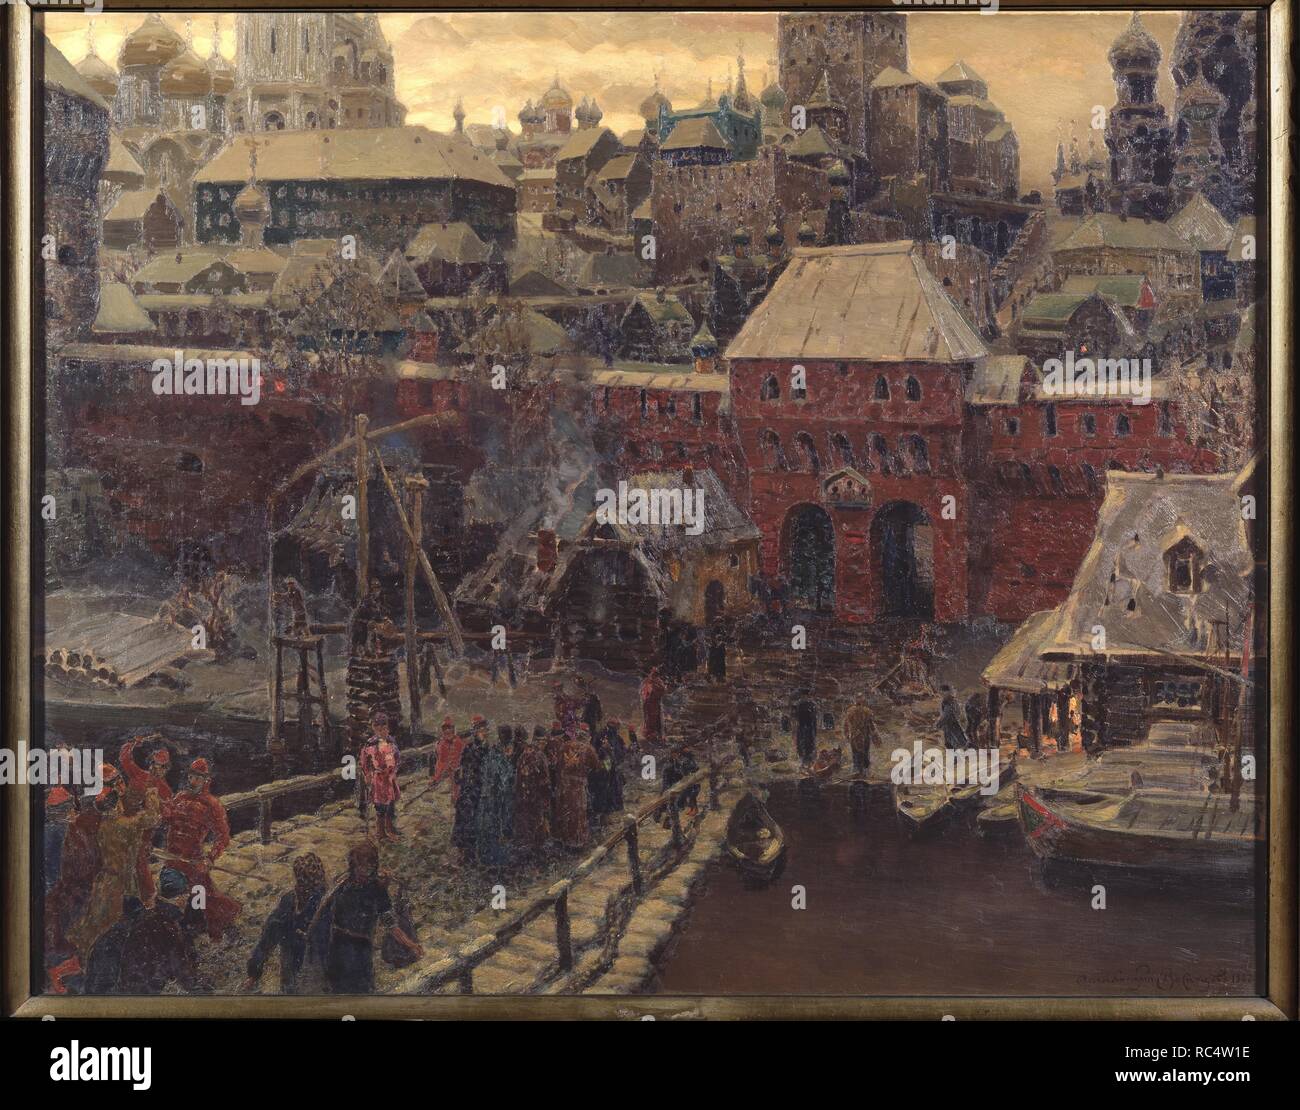 Moscou au 17ème siècle. Le pont Moskvoretsky et la porte d'eau. Musée : la Galerie nationale Tretiakov (Moscou). Auteur : Vasnetsov, Appolinari Mikhaïlovitch. Banque D'Images